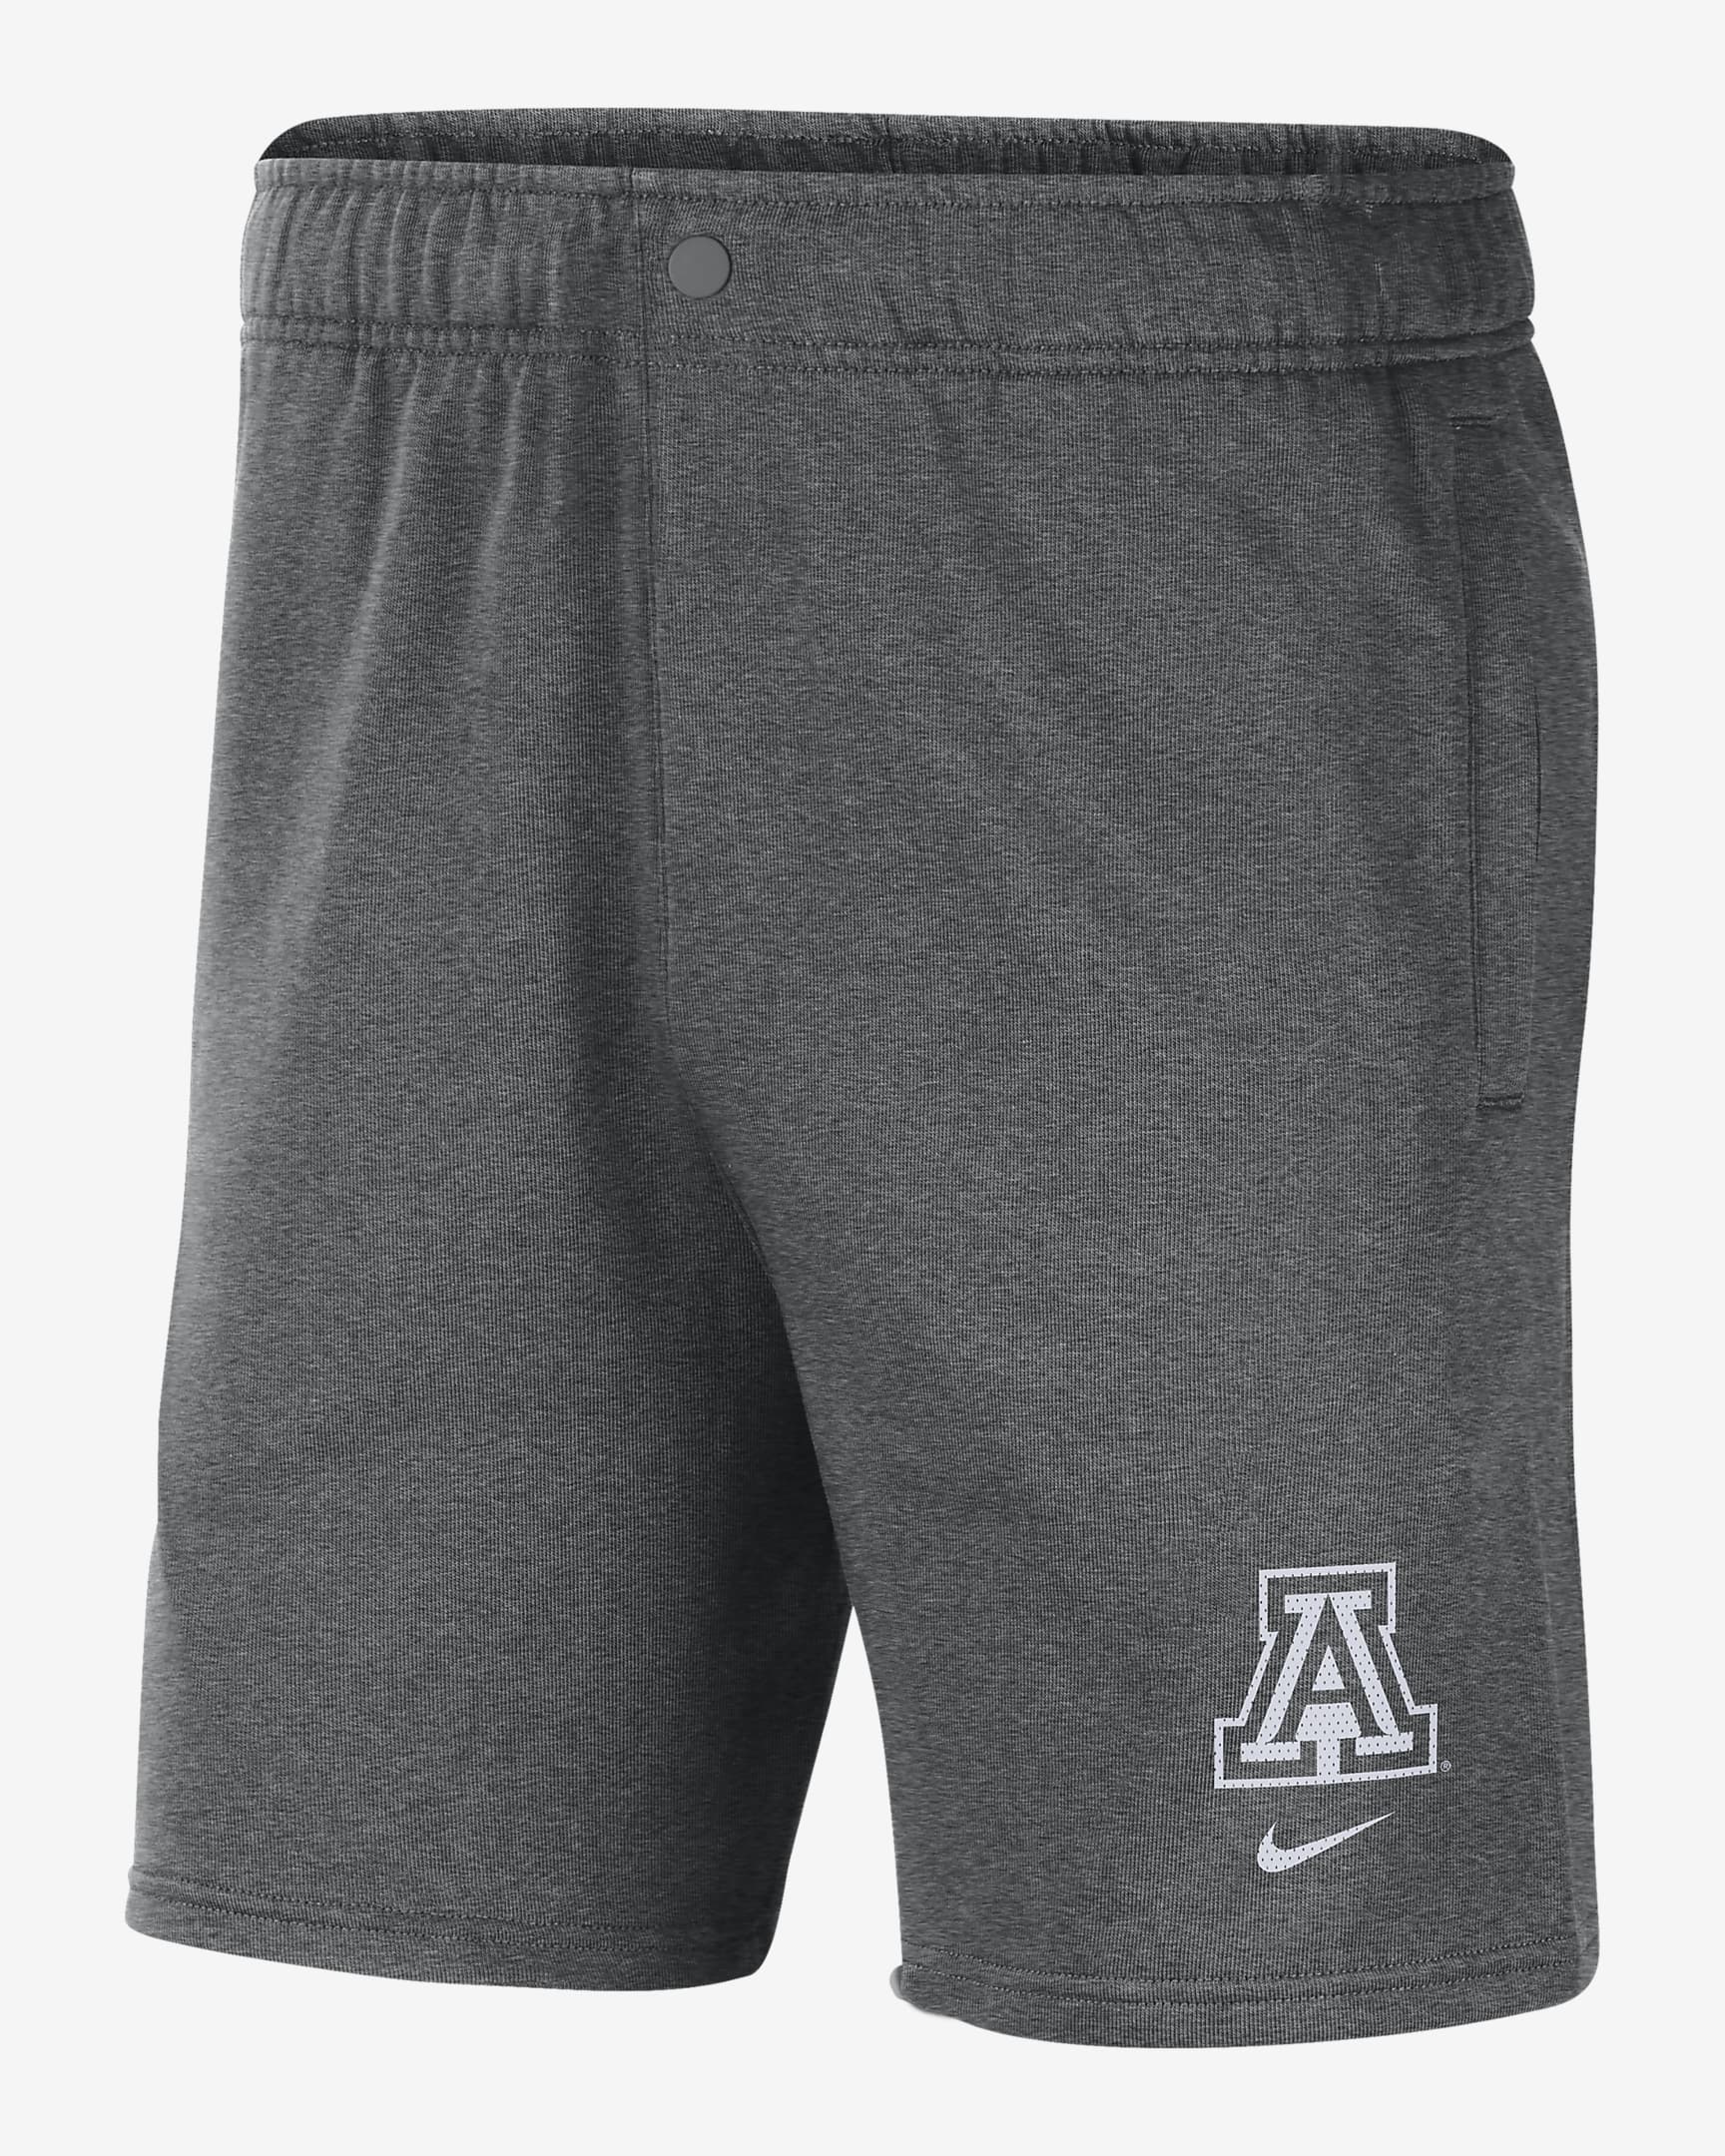 Shorts de tejido Fleece Nike College para hombre Arizona. Nike.com